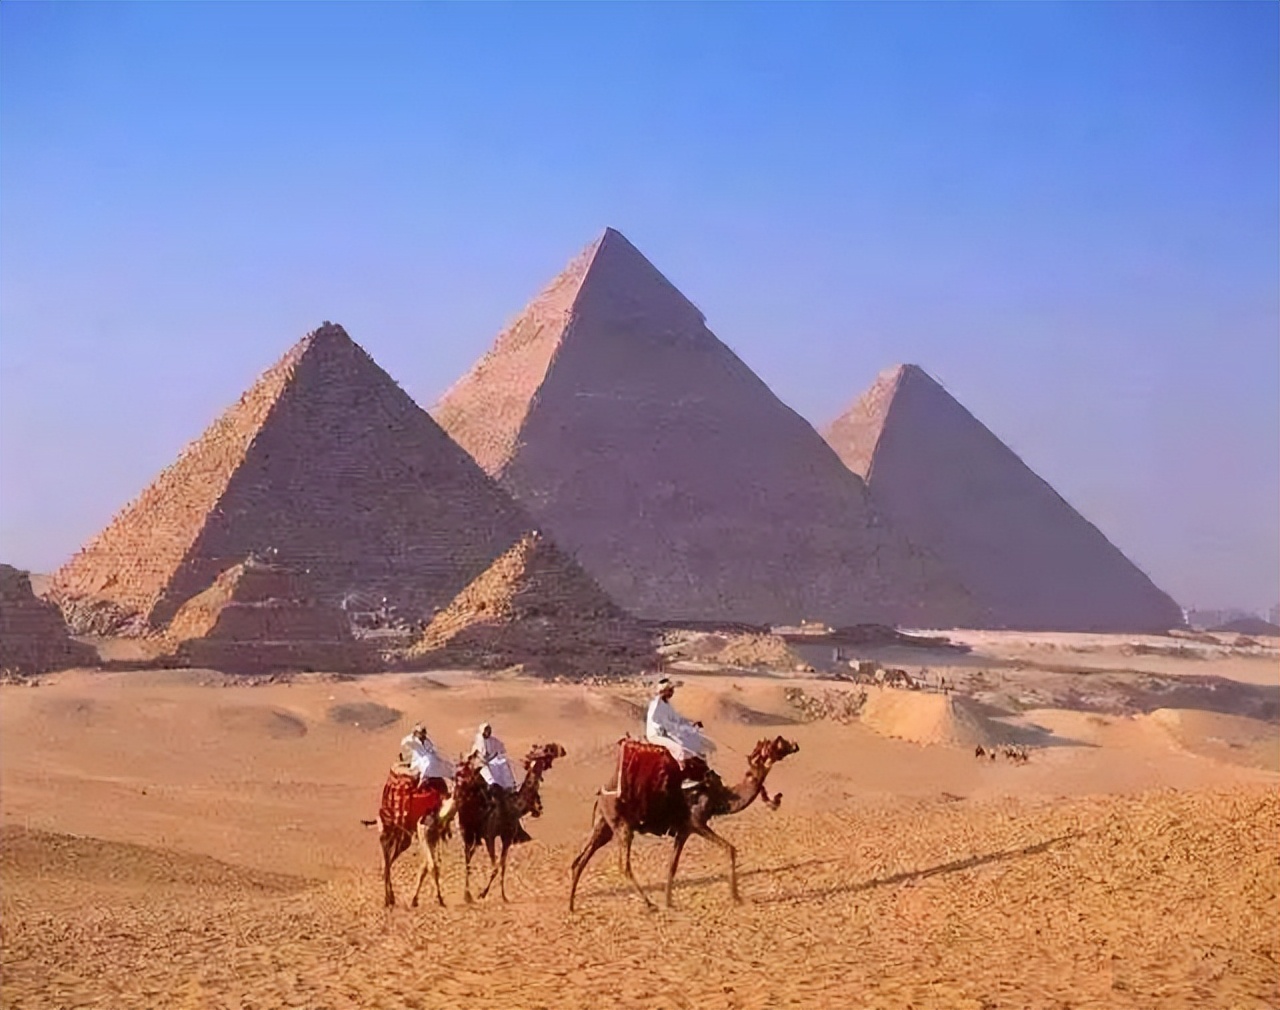 我们真正地了解胡夫金字塔吗？金字塔的来历到底是什么？